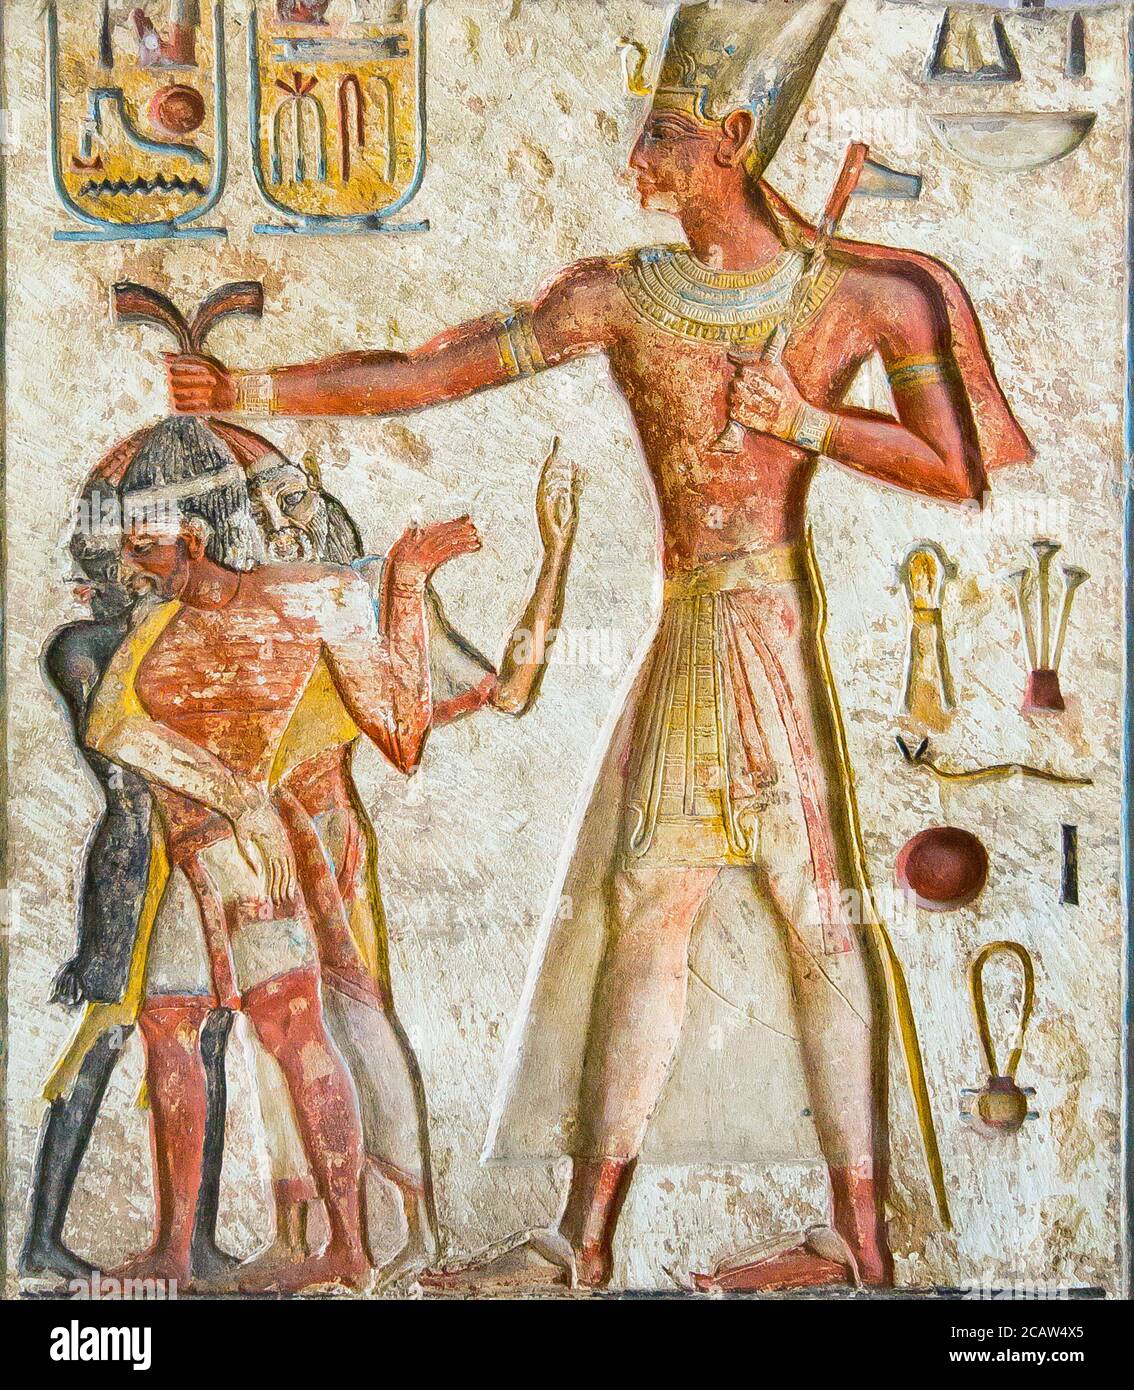 Le Caire, Musée égyptien, soulagement du roi Ramses II tuant des ennemis étrangers : les Nubiens, les Libyens et les Syriens. Calcaire, de Memphis. Banque D'Images